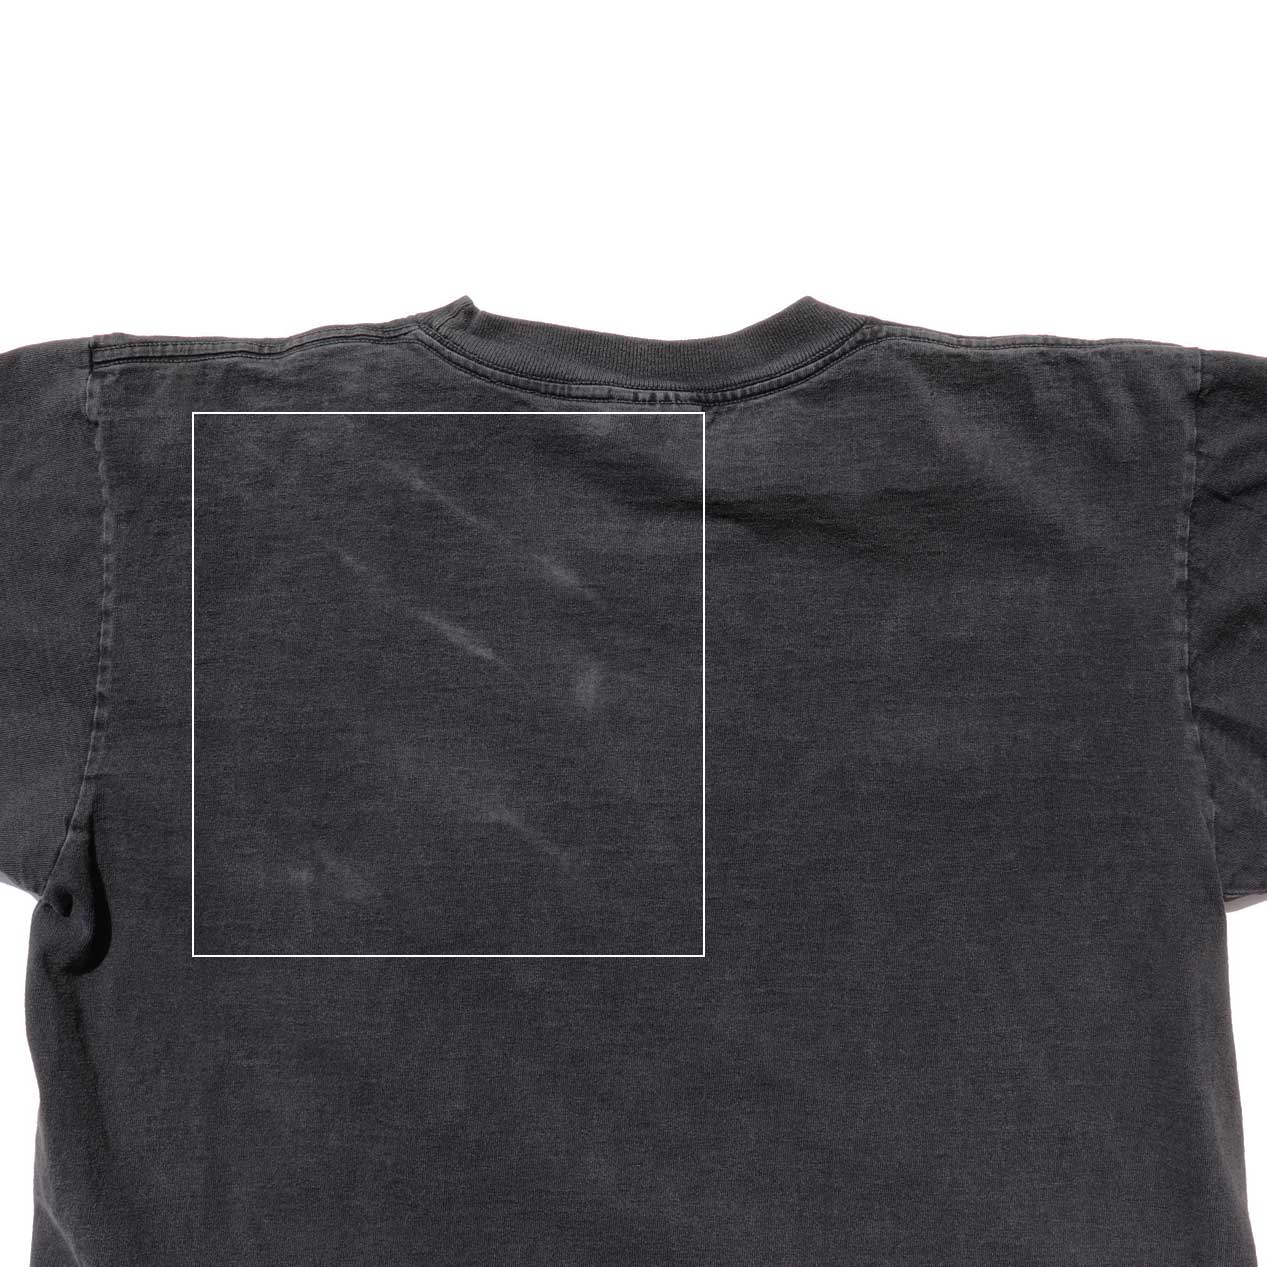 POST JUNK / 90's STAR WARS オフィシャル Tシャツ [L]